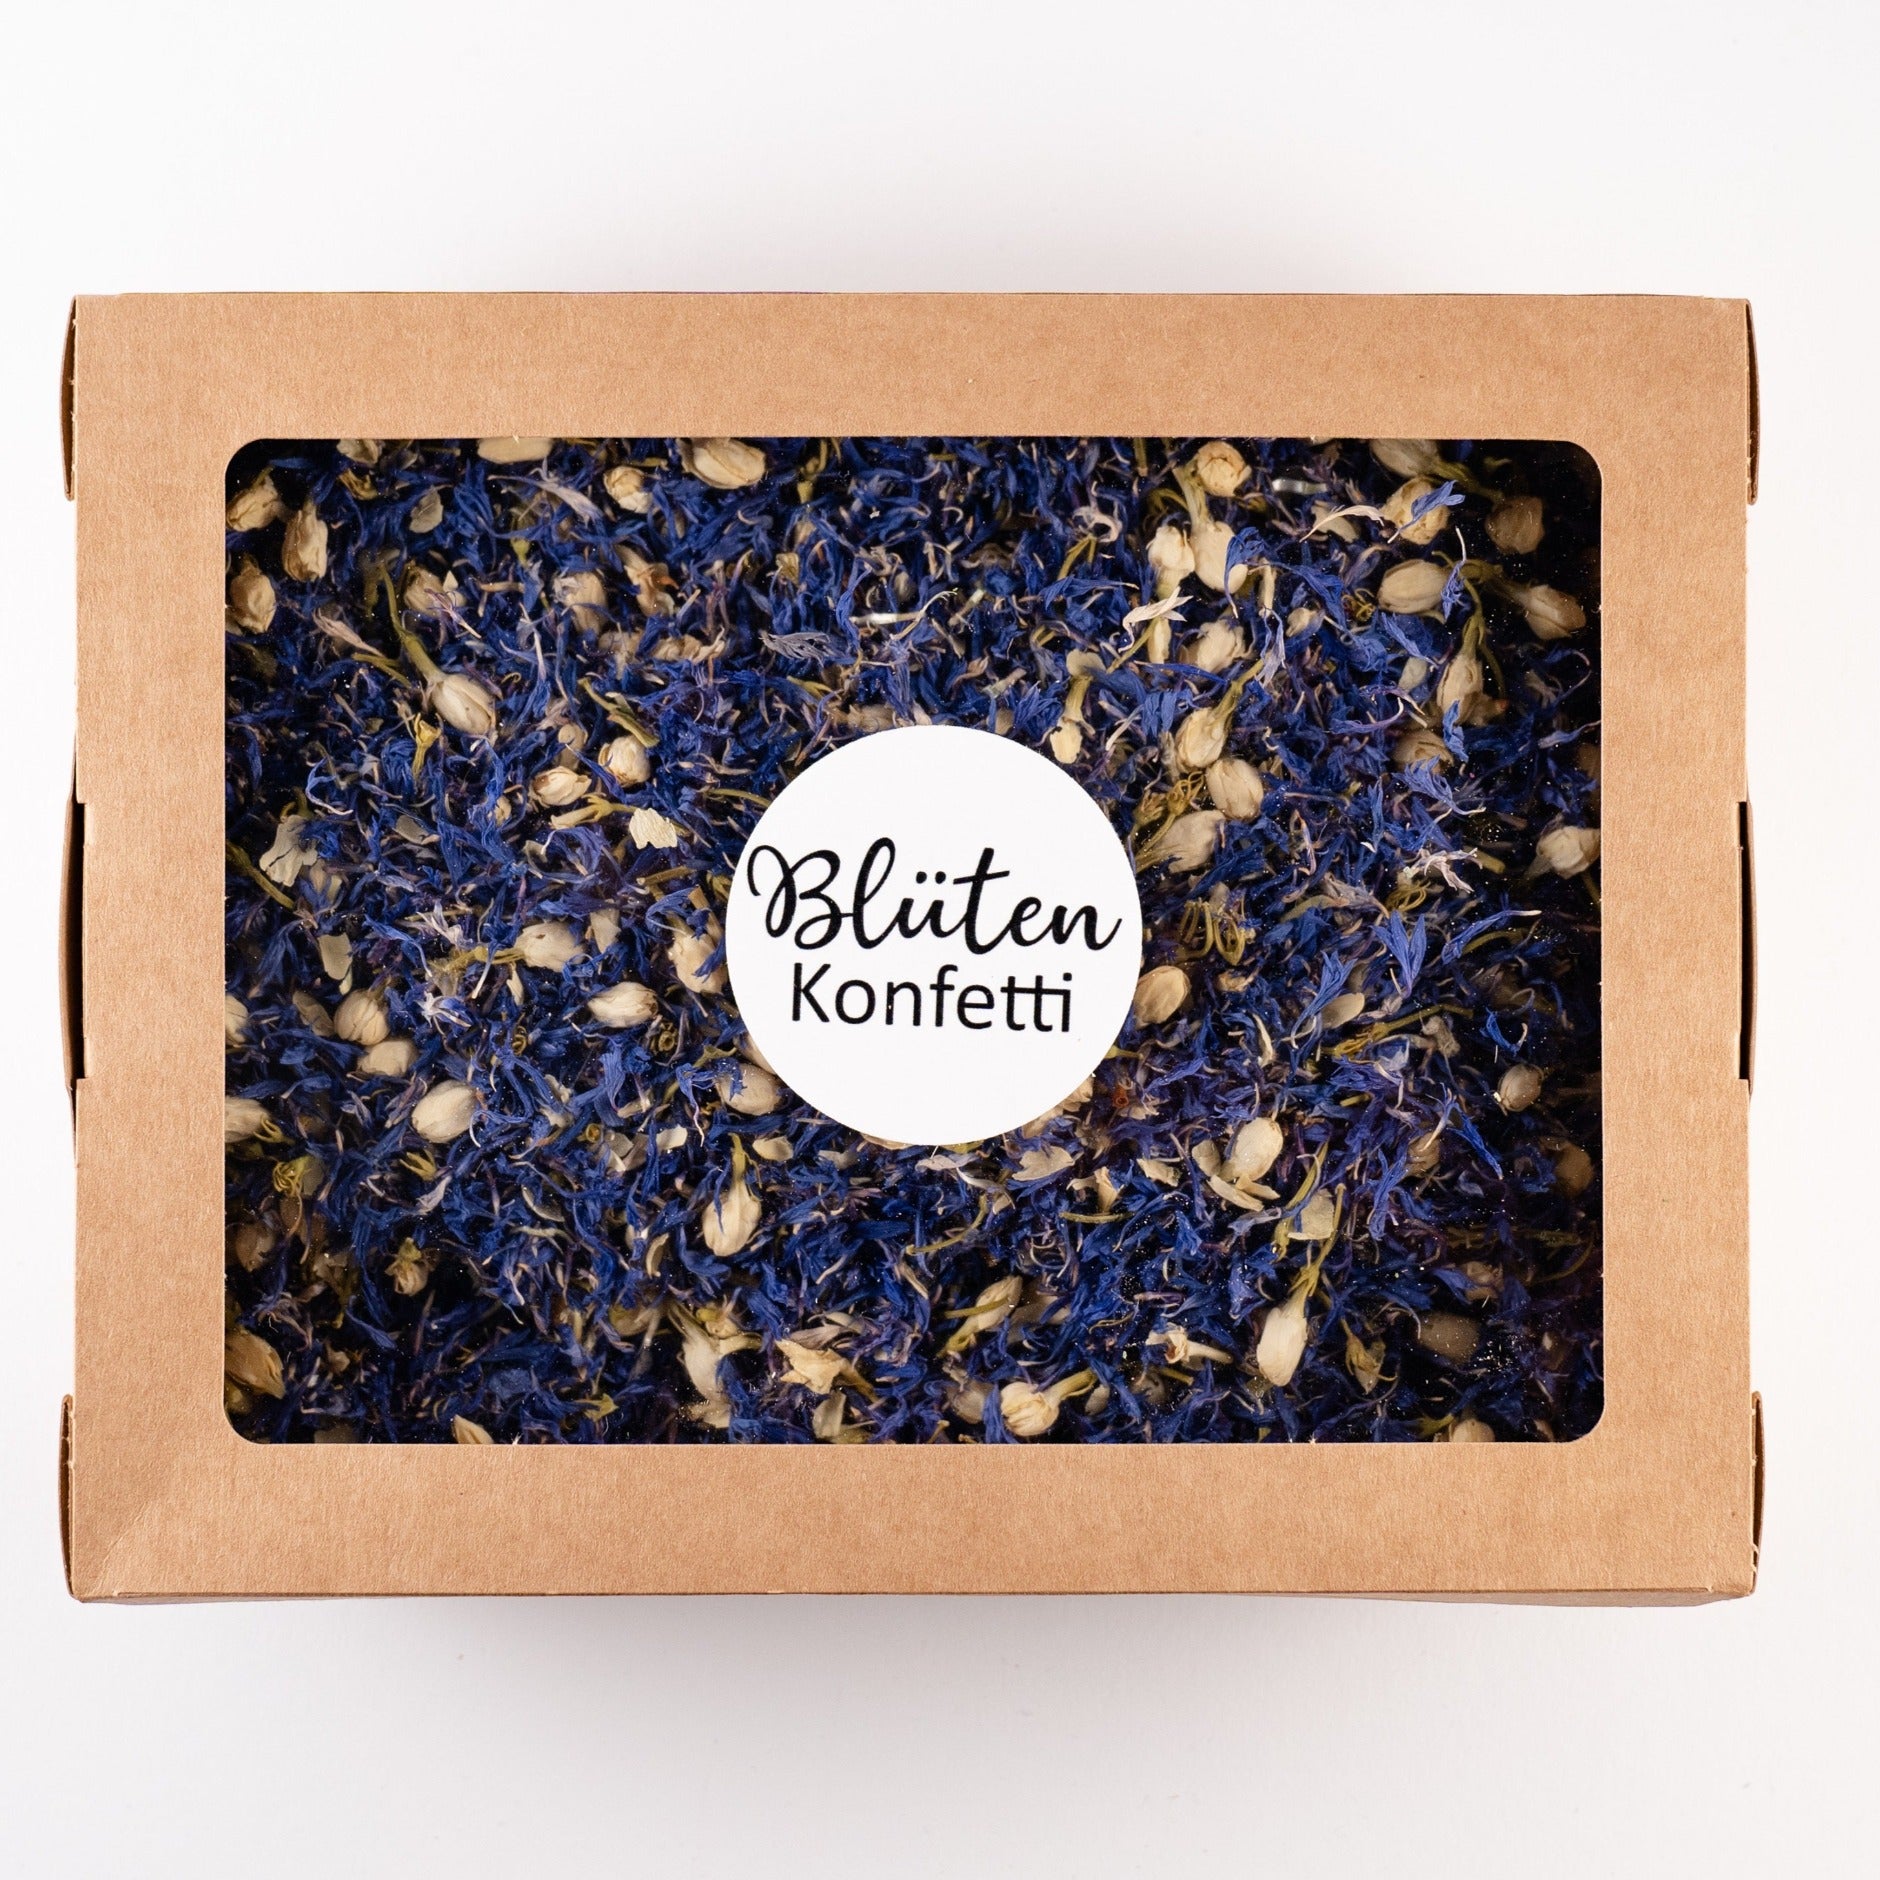 Blütenkonfetti Blue Ivory in der Box